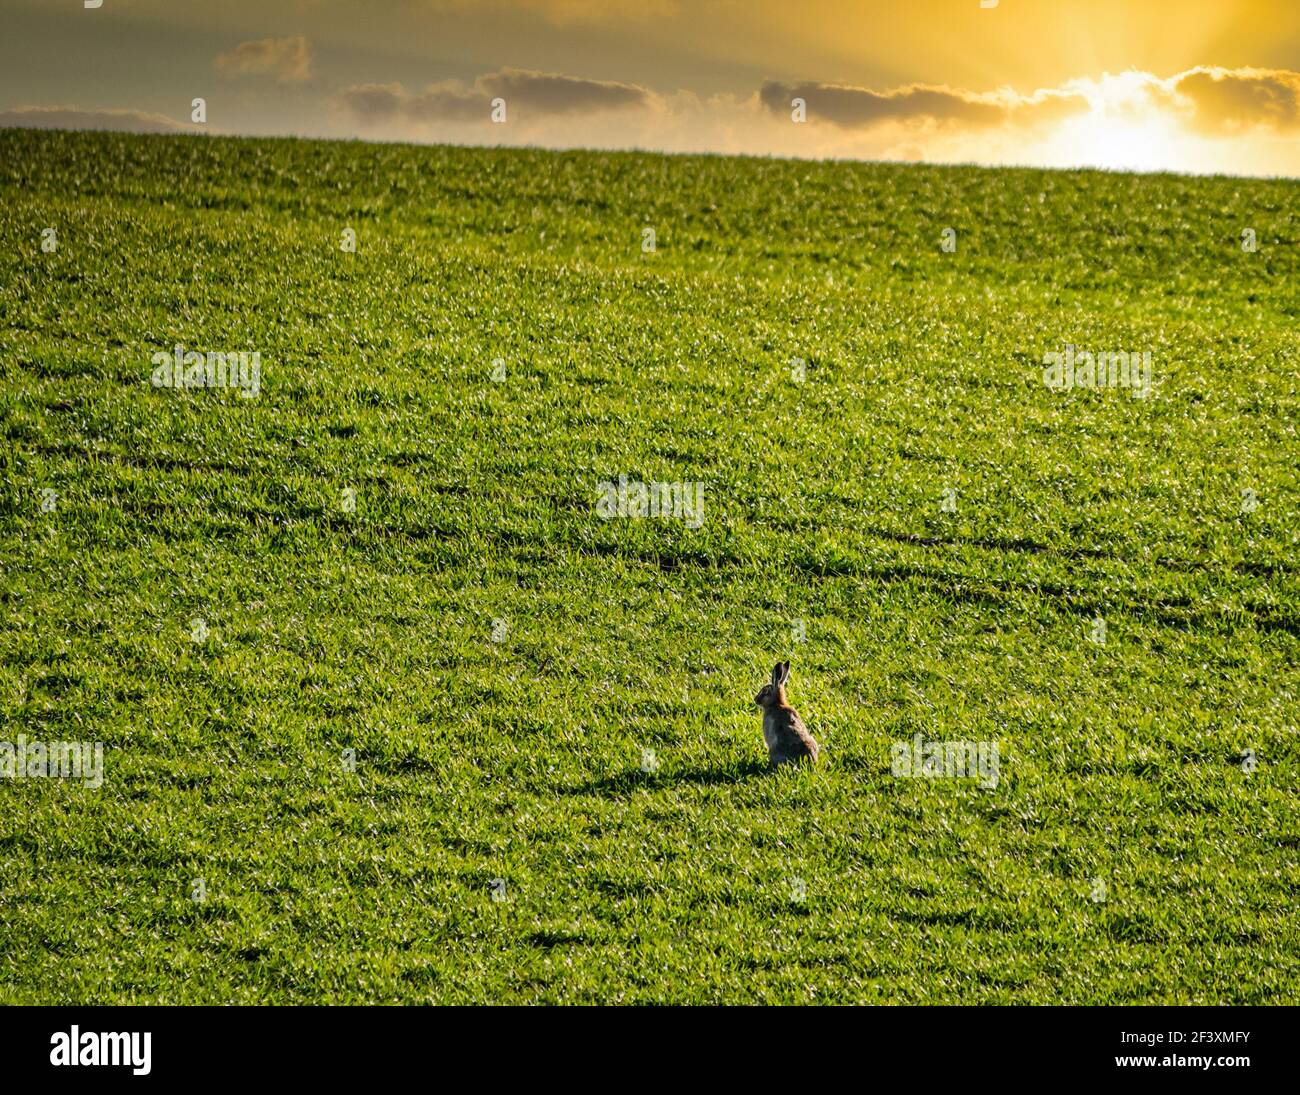 Allerta lepre marrone (Lepus europaeus) seduta in campo verde al crepuscolo con cielo di tramonto, Lothian orientale, Scozia, Regno Unito Foto Stock